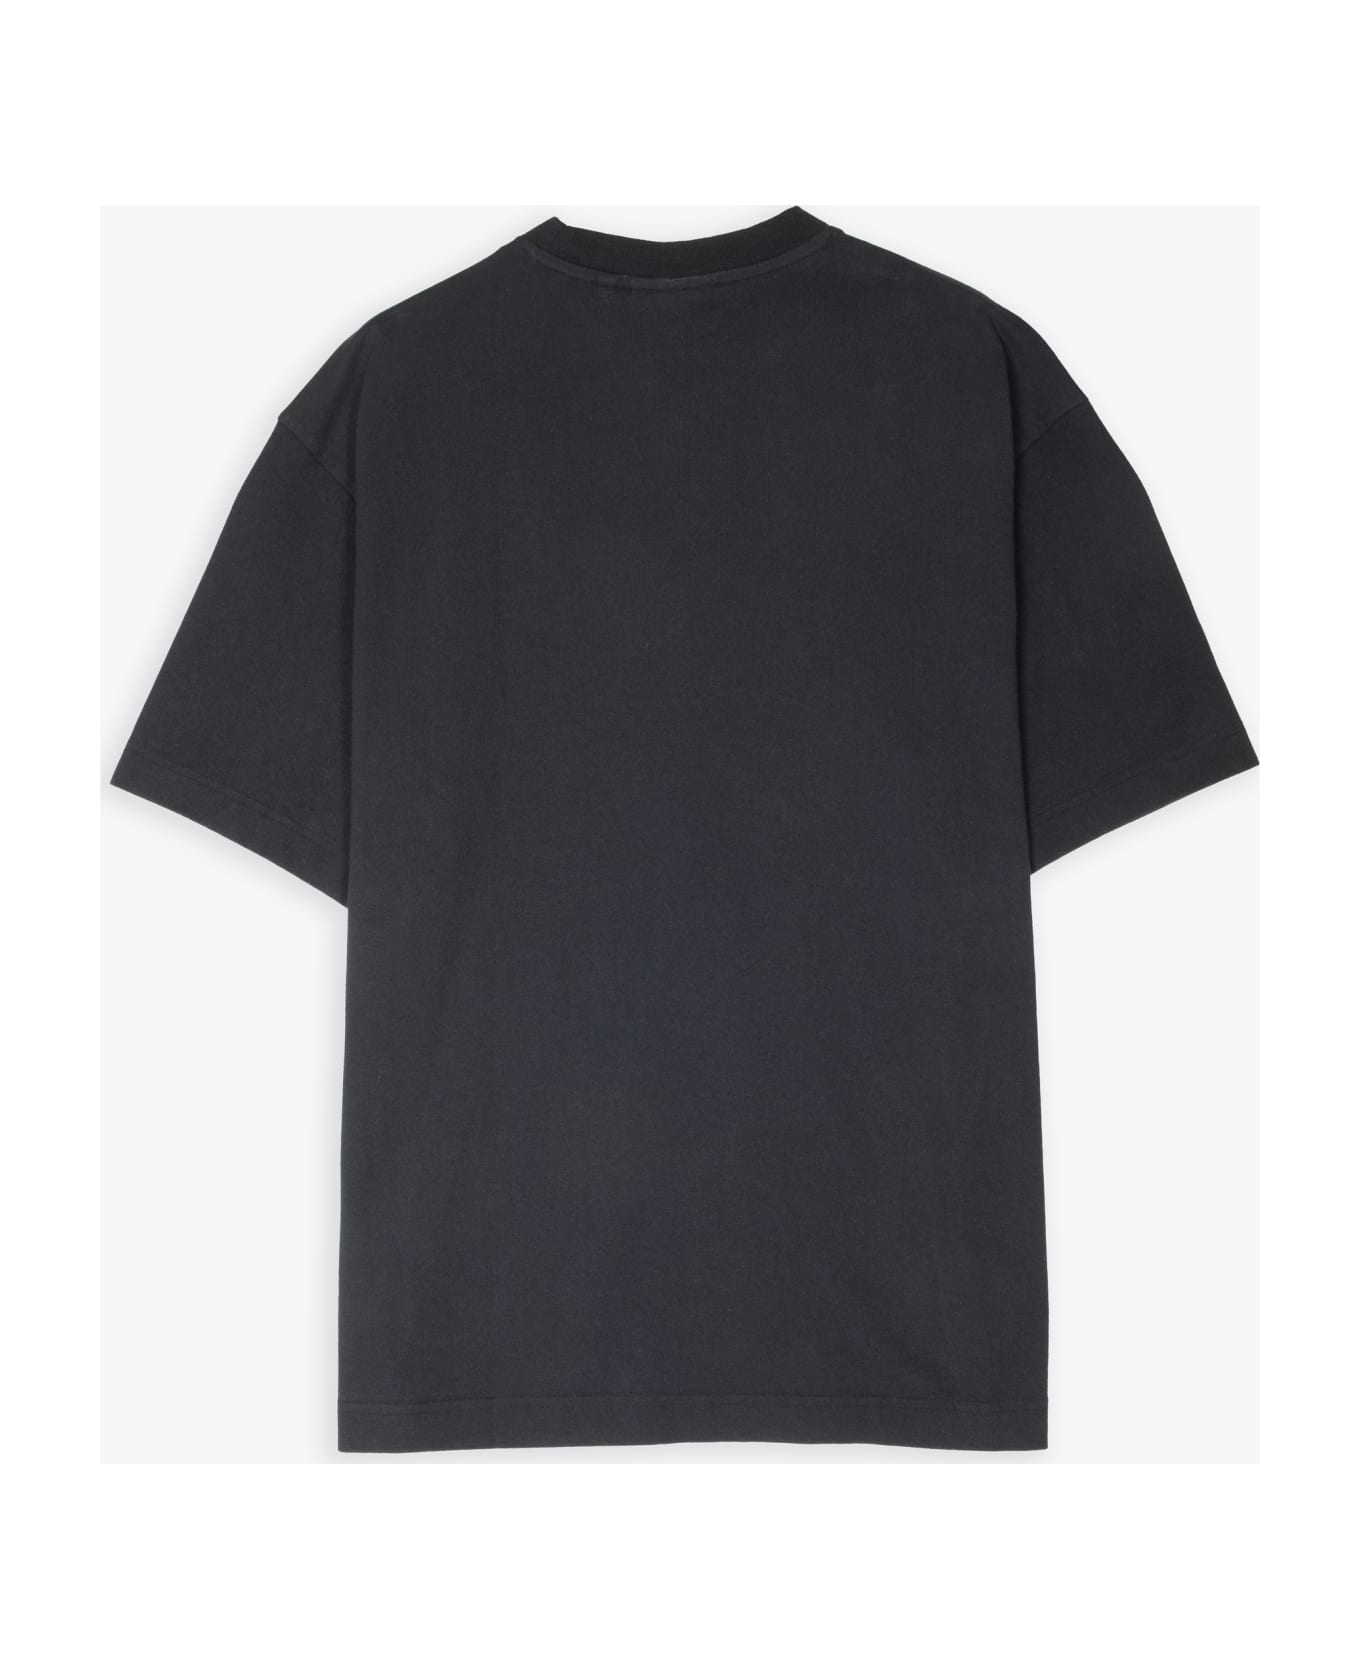 Axel Arigato Essential T-shirt Black t-shirt with italic logo print - Essential T-shirt - Nero